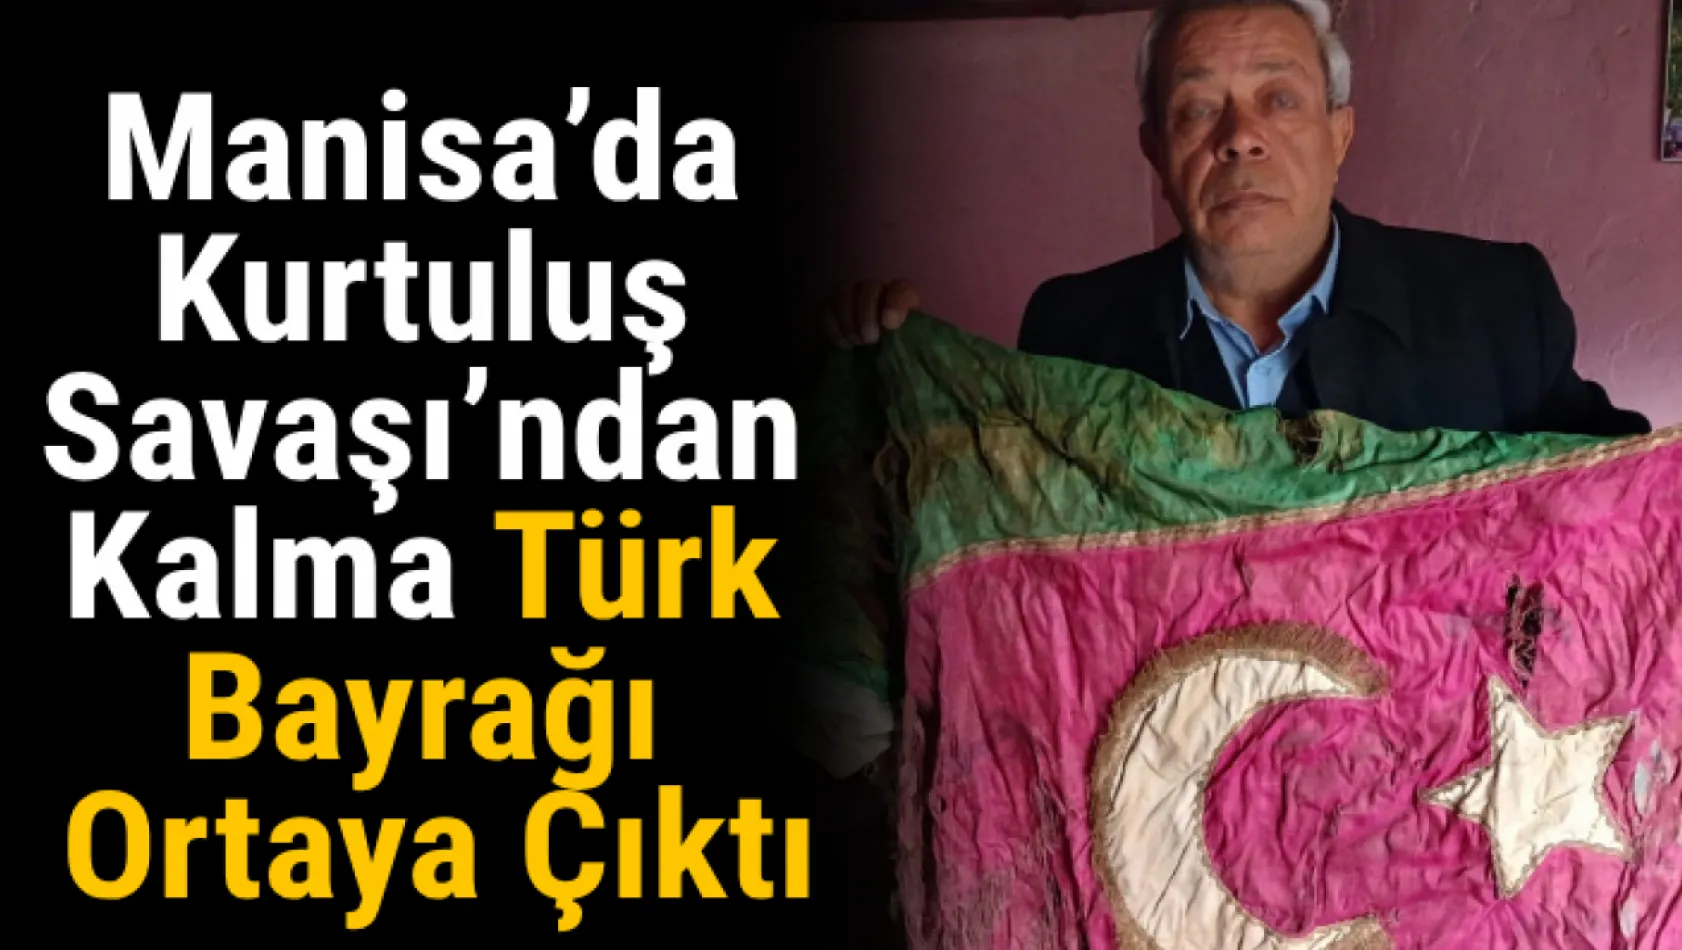 Manisa'da Kurtuluş Savaşı'ndan kalma Türk bayrağı ortaya çıktı